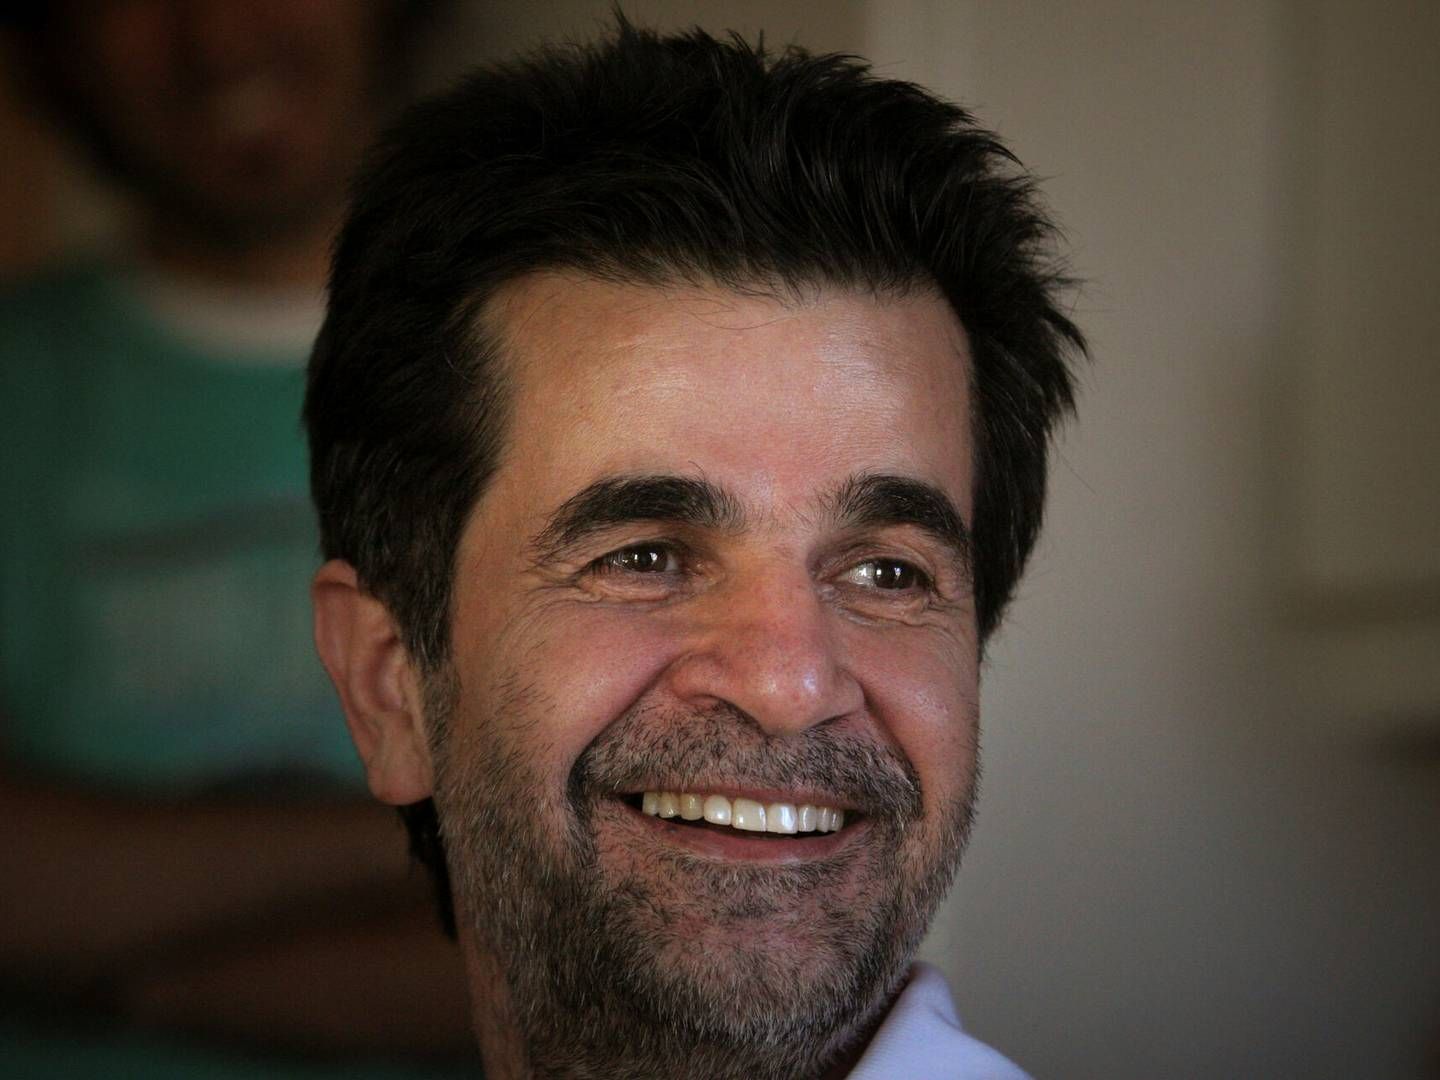 Den iranske filminstruktør Jafar Panahi smilende i sit hjem i 2010. Dengang lige efter han var blevet løsladt efter en fængselsdom. Han regnes som en af Irans vigtigste filminstruktører og er en torn i øjet på det religiøse regime. | Foto: Stringer/Reuters/Ritzau Scanpix